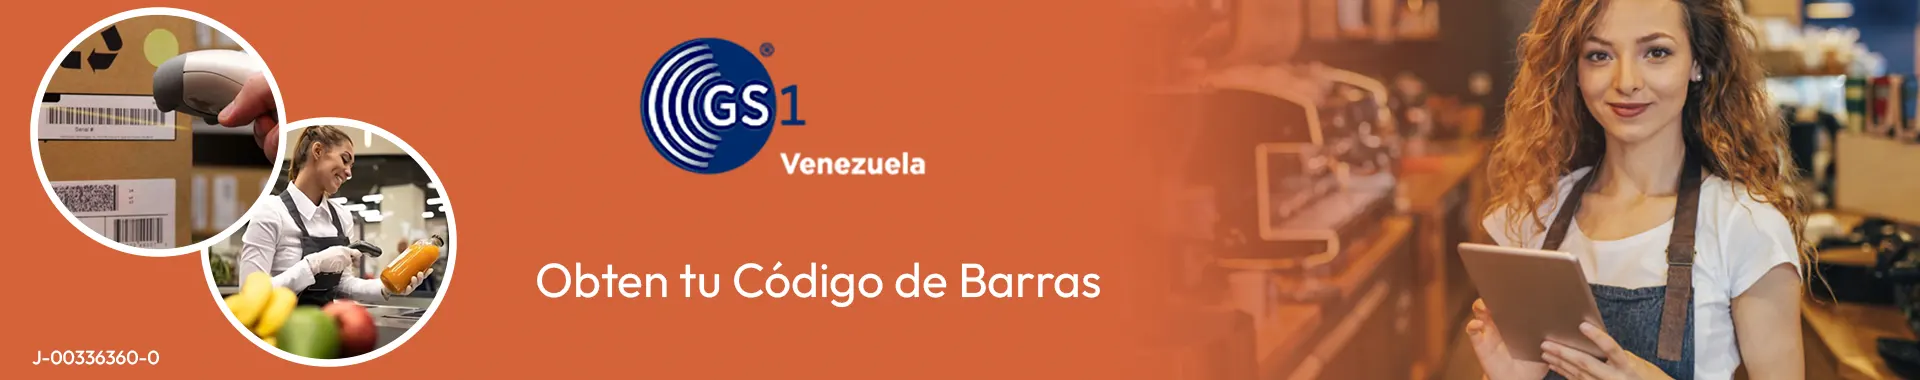 Imagen 1 del perfil de Códigos de Barra GS1 Venezuela